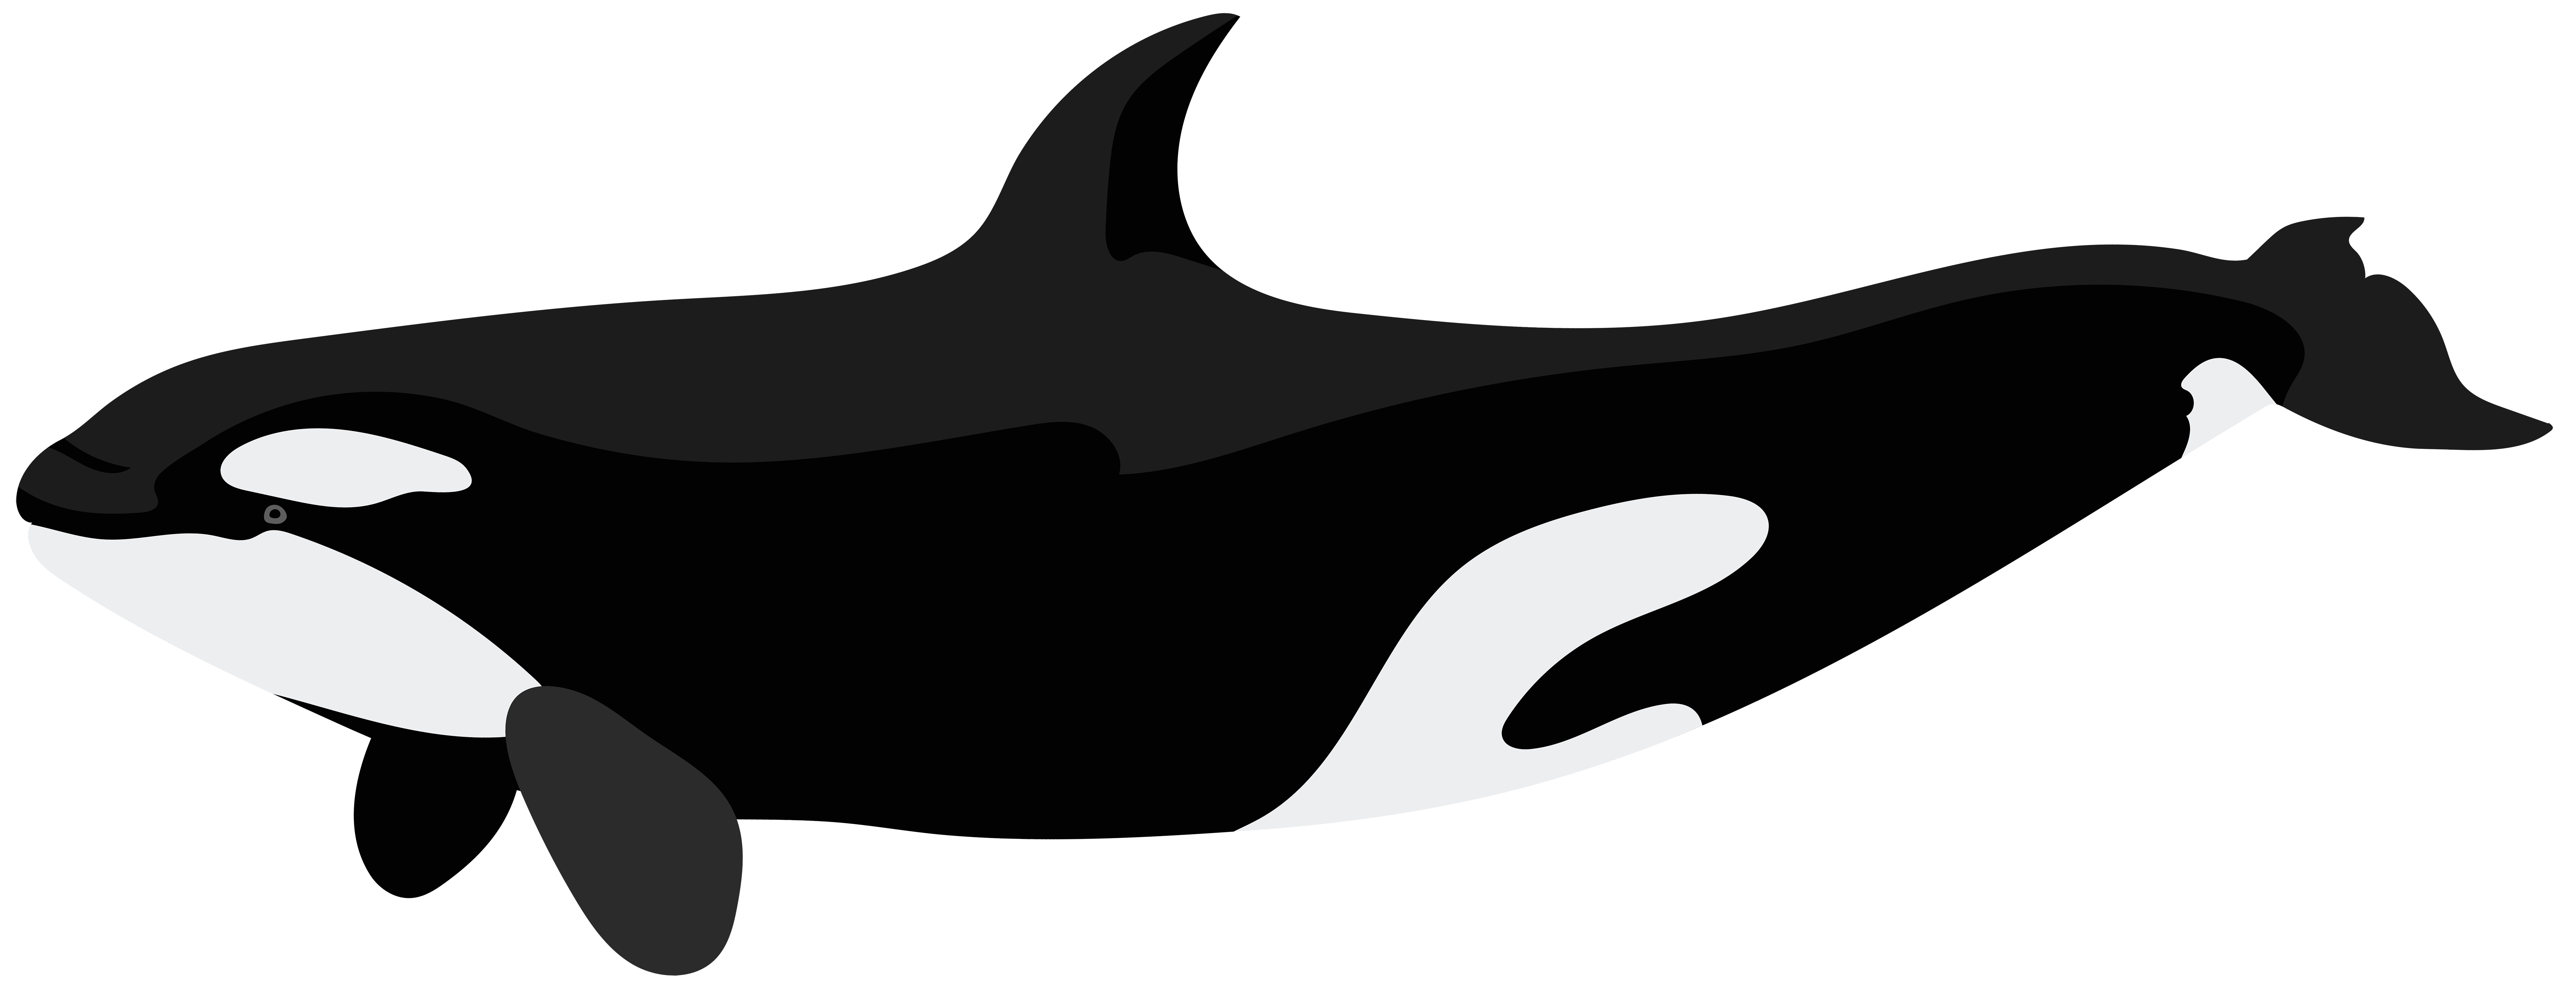 orca clipart